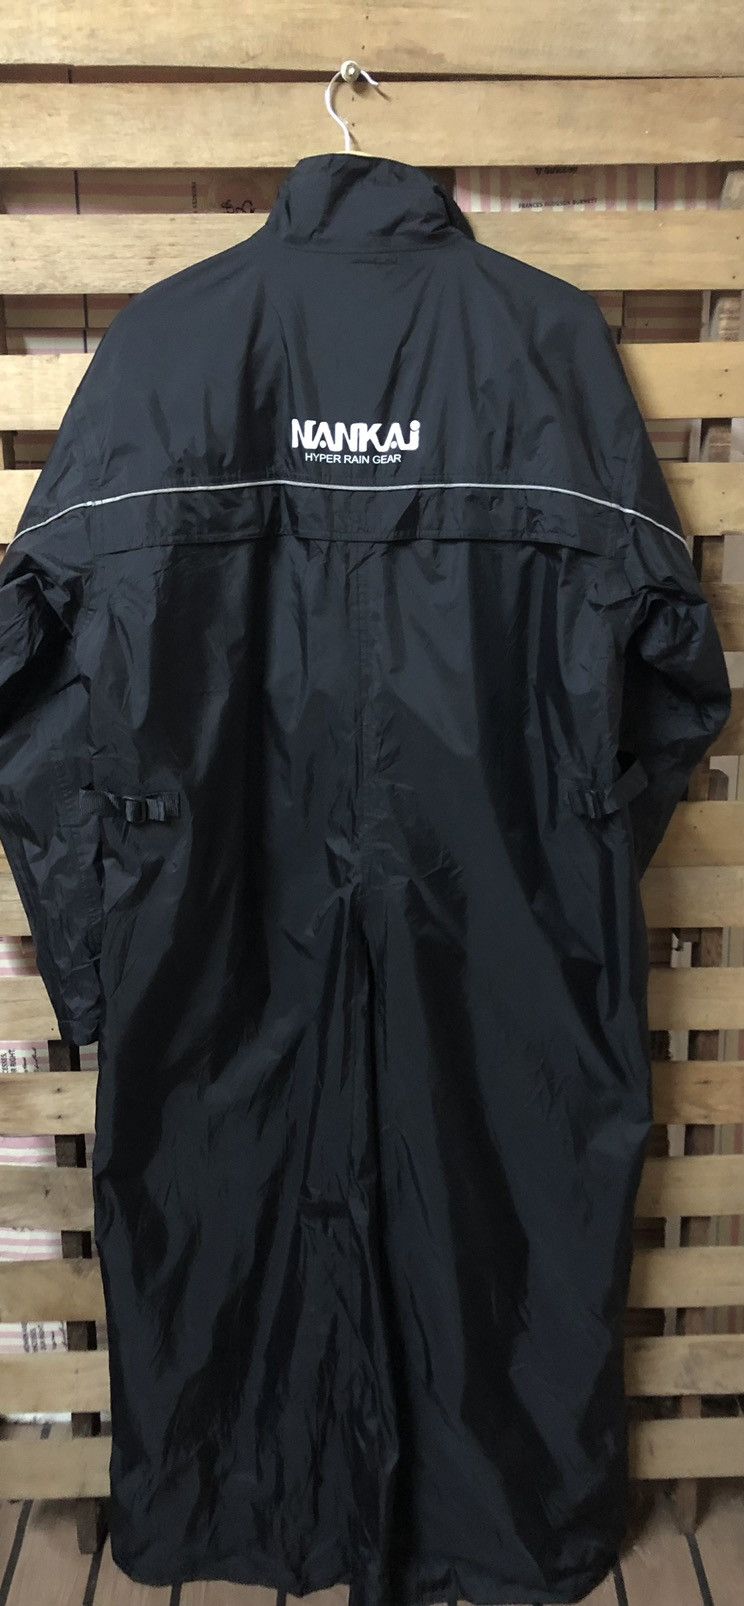 Sports Specialties - Nankai Motorcycle Hyper Rain Gear Long Jacket - 2